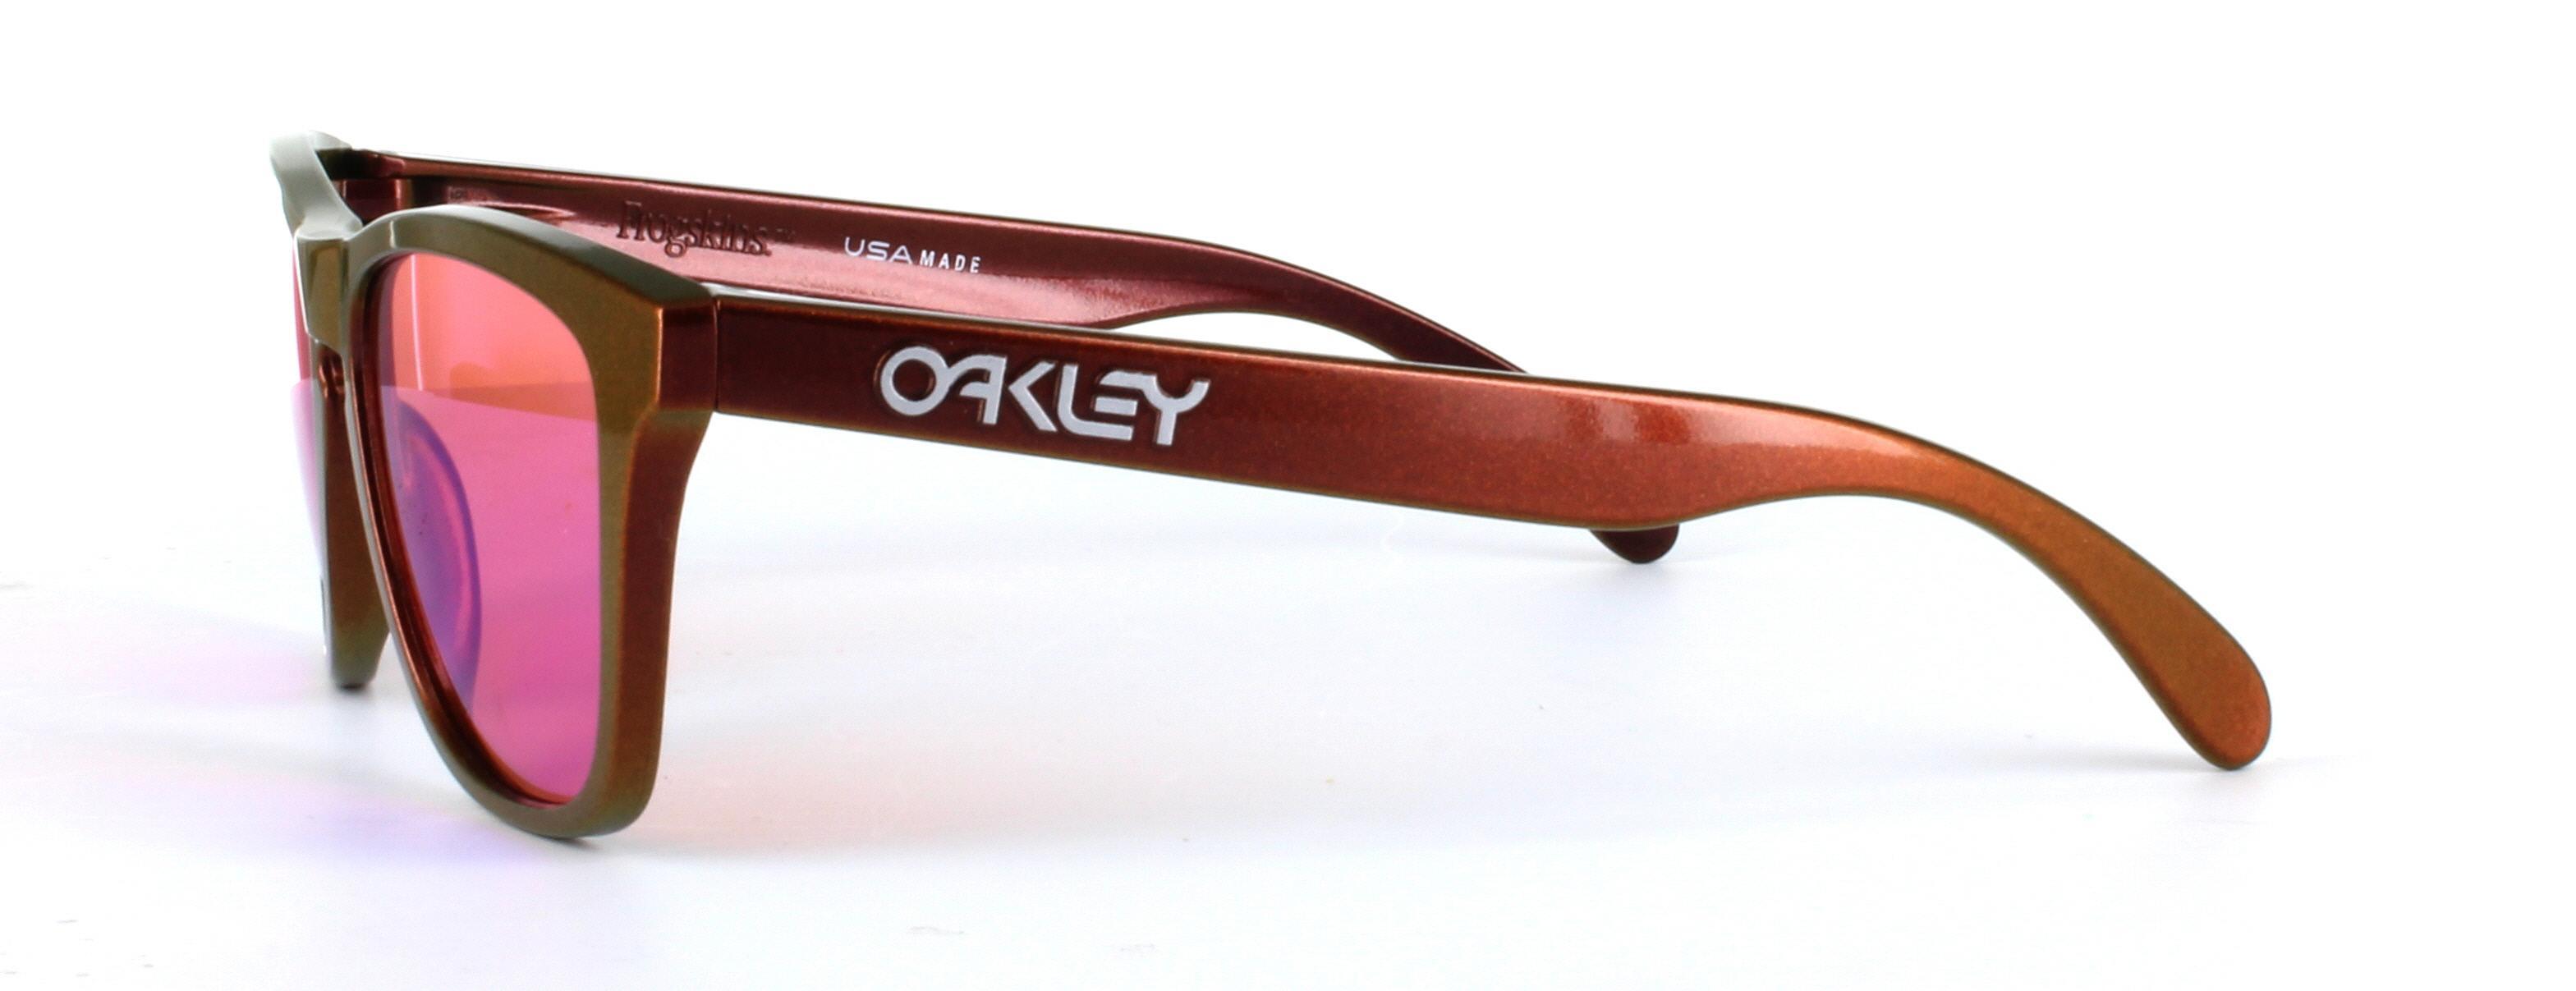 Oakley (O9013) Copper Full Rim Plastic Prescription Sunglasses - Image View 2